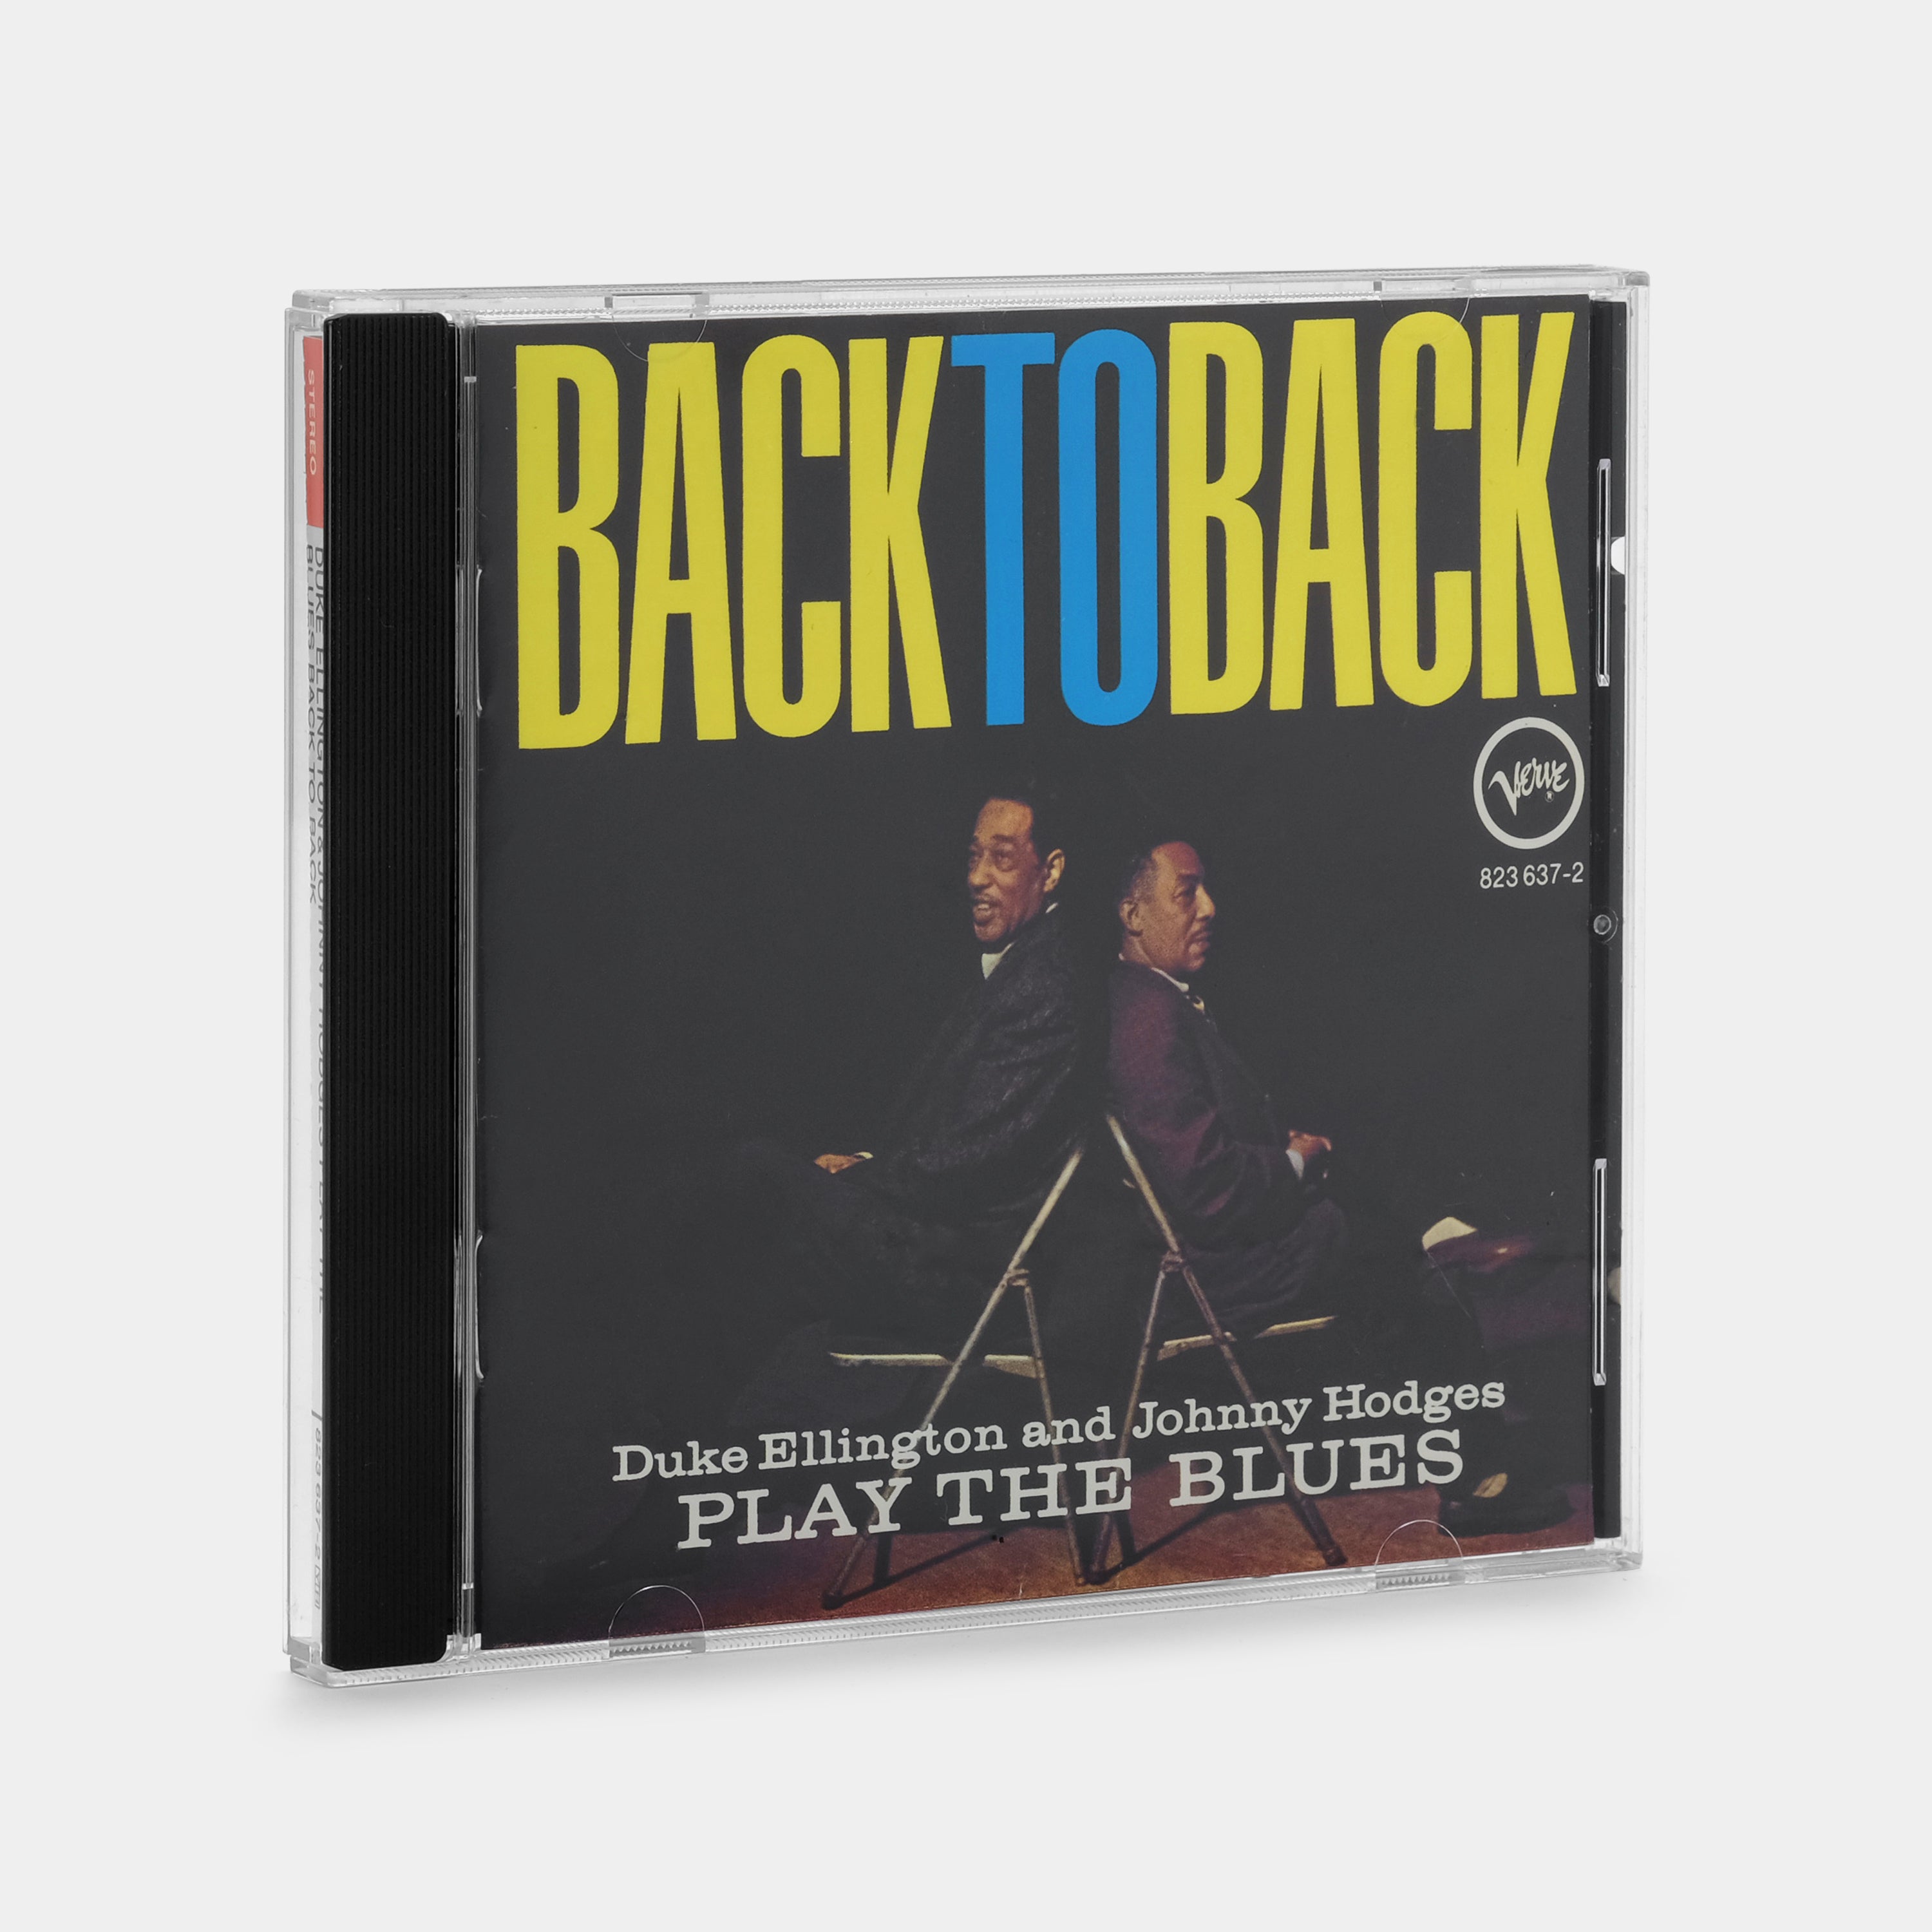 Duke Ellington & Johnny Hodges - Back To Back (Duke Ellington And Johnny Hodges Play The Blues) CD